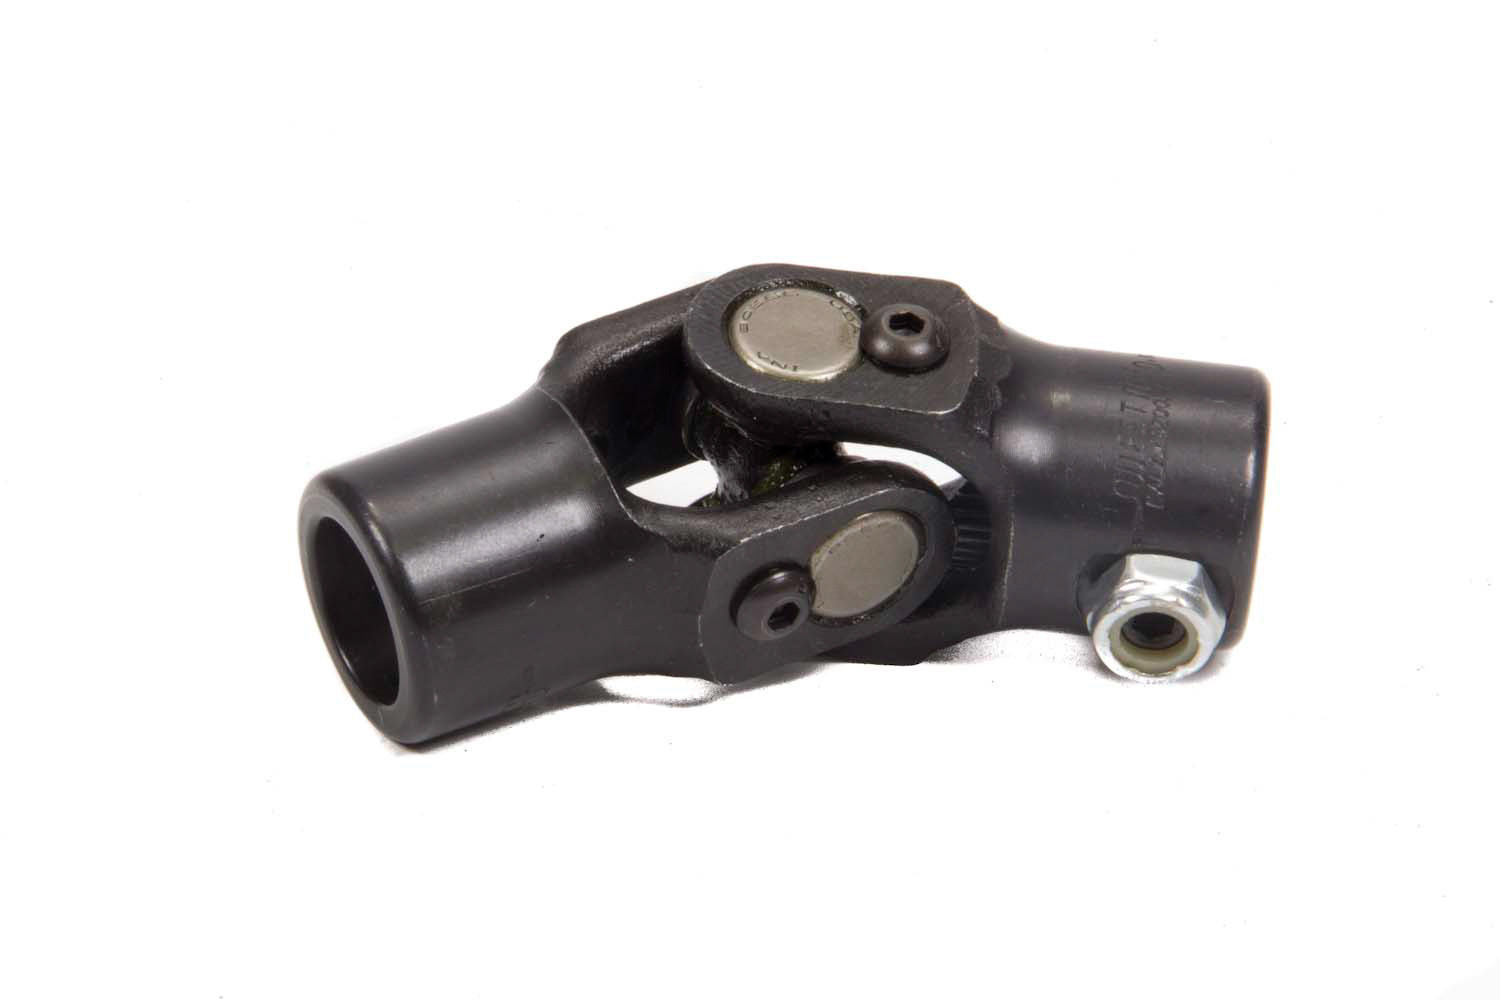 Steering Universal Joint - Single Joint - 3/4 in 20 Spline to 13/16 in 36 Spline - Steel - Black Paint - Each